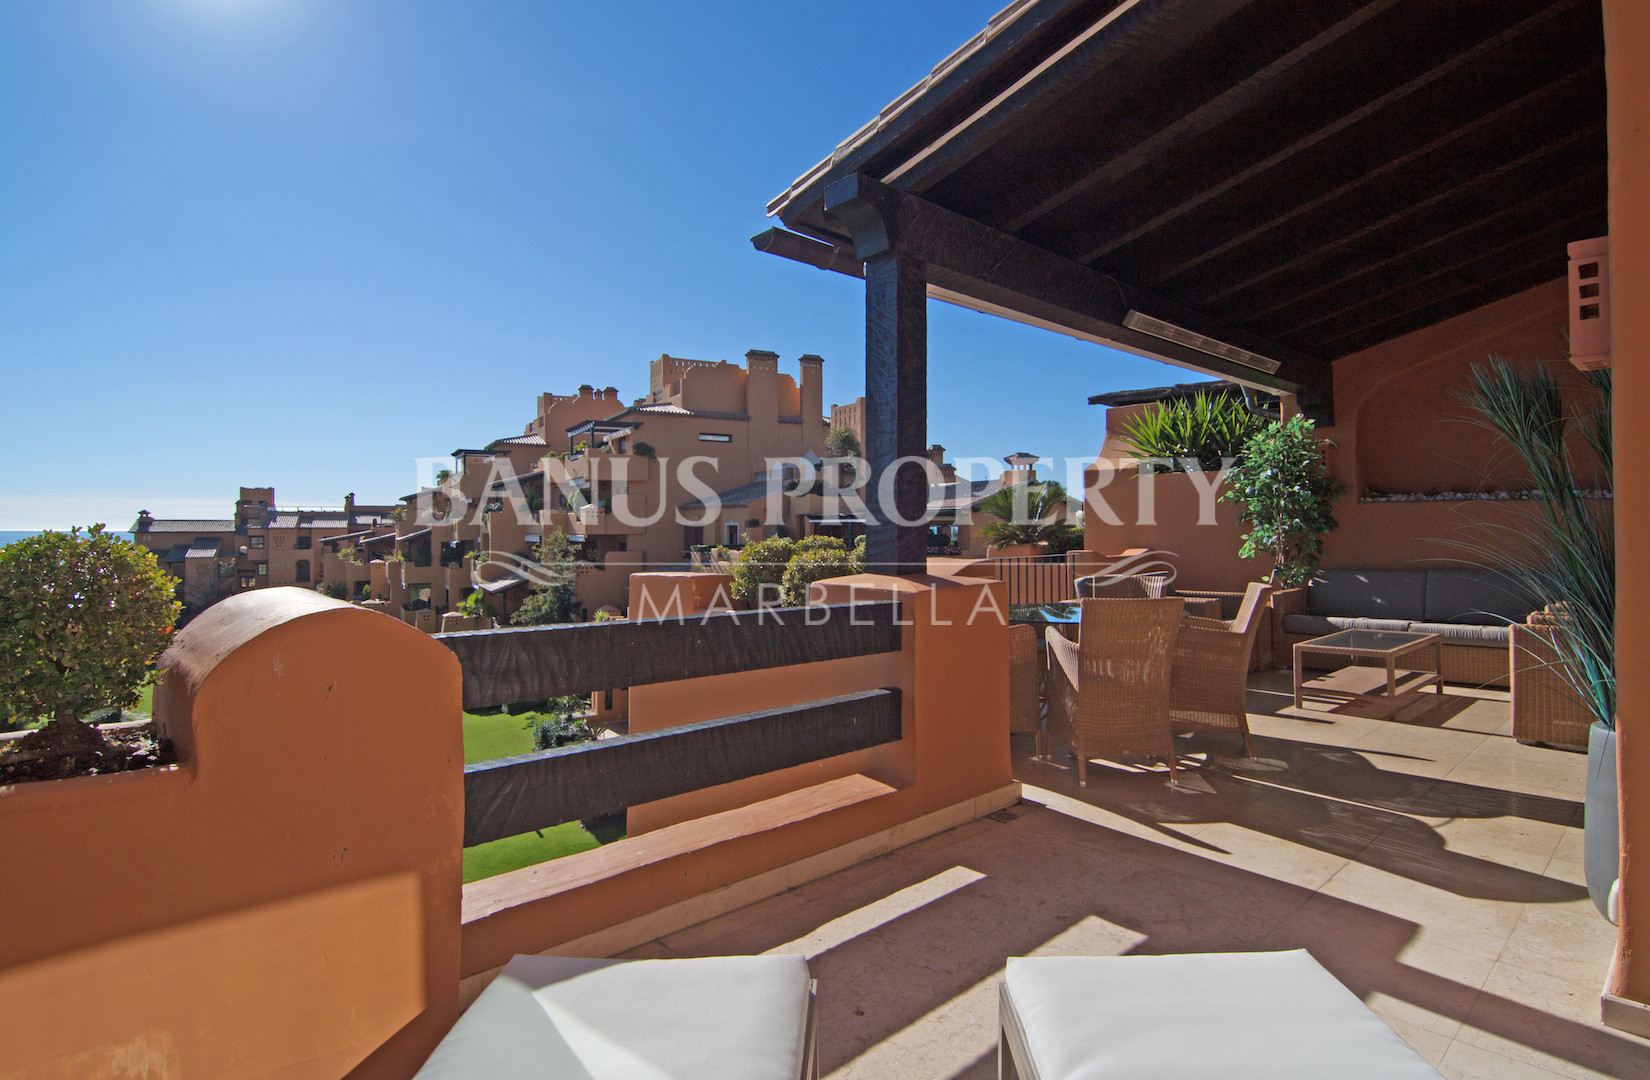 3 bed beach apartment with stunning sea views for sale in Los Granados del Mar, Estepona